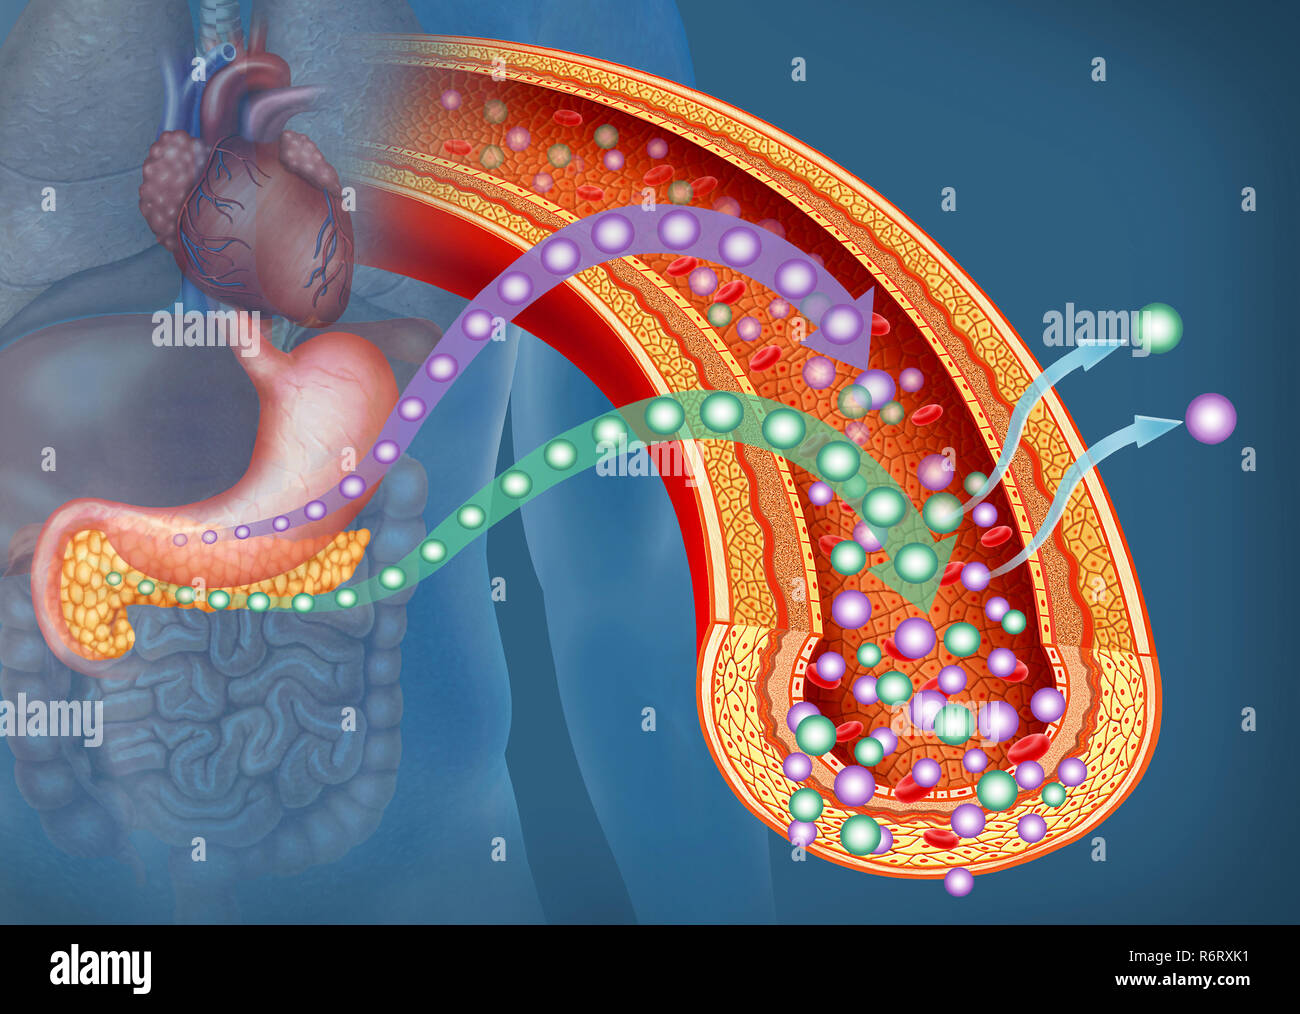 Illustration über die Bedeutung von Glukose und Insulin im menschlichen Körper. Glukose ist die wichtigste Energiequelle für den menschlichen Körper. Stockfoto